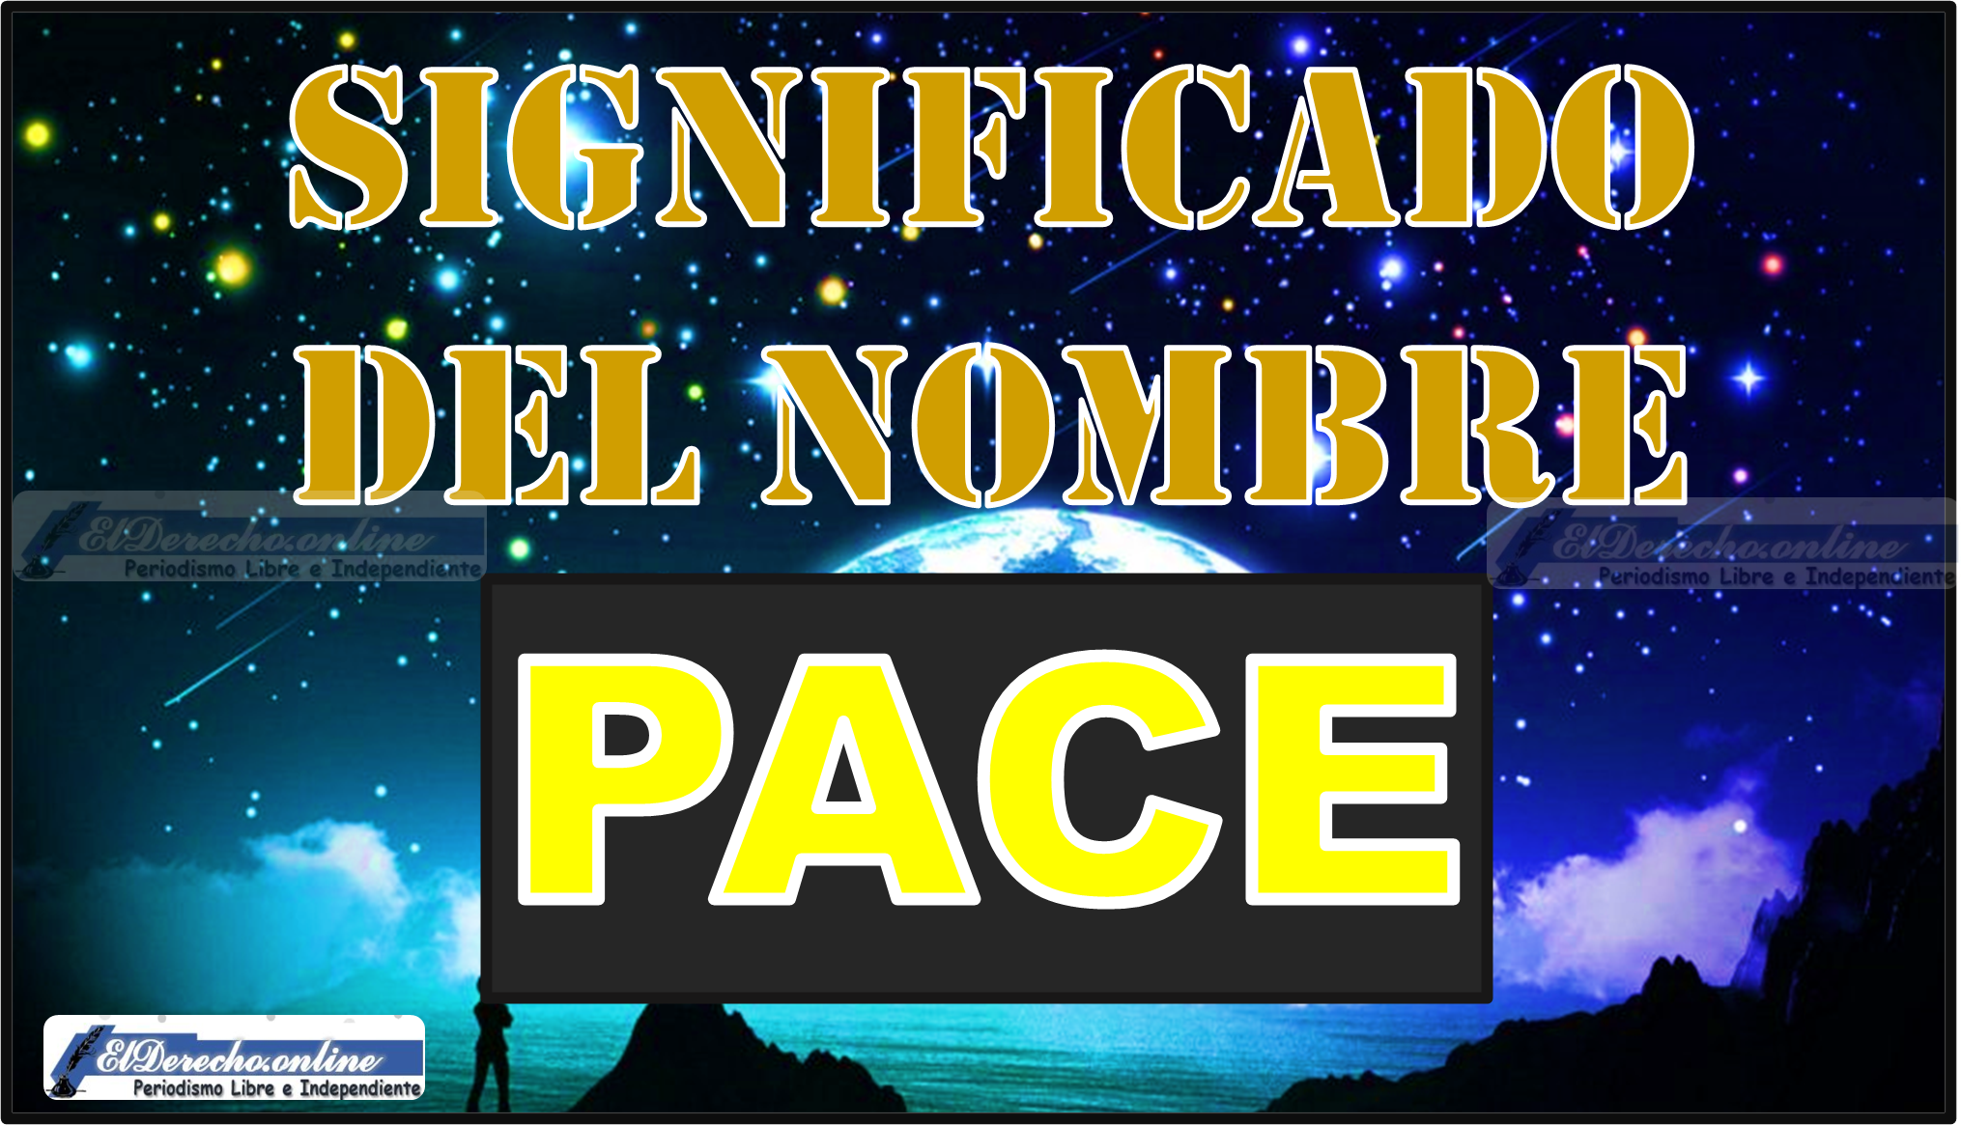 Significado del nombre Pace, su origen y más